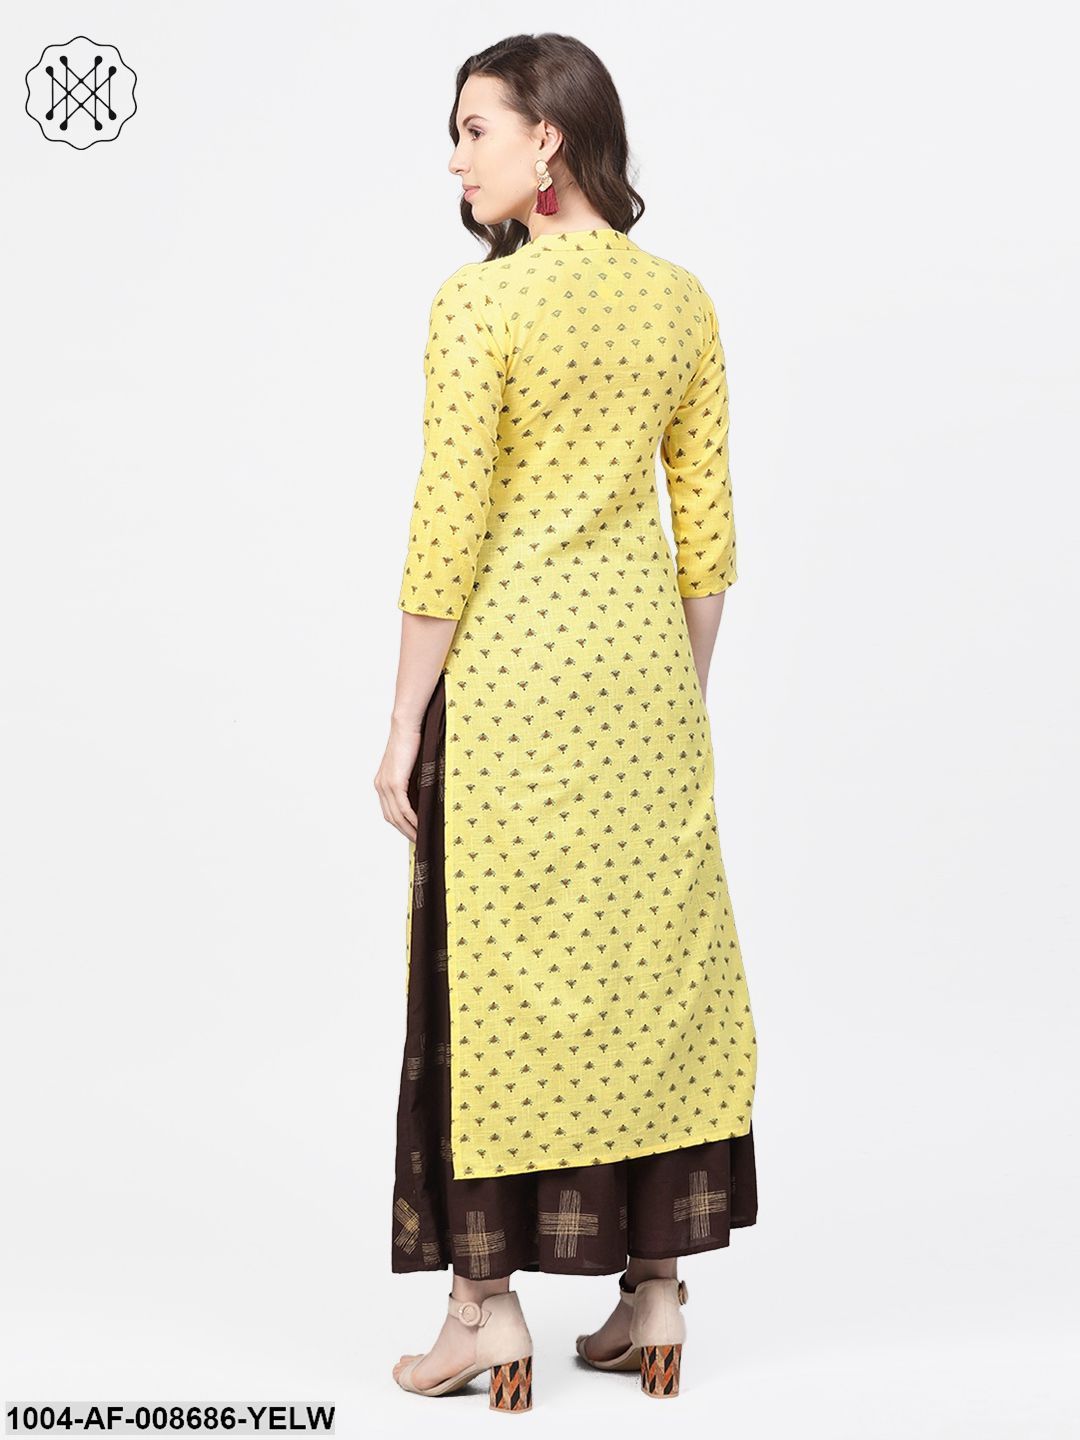 Yellow & dark brown printed Straight Kurta set with Skirt